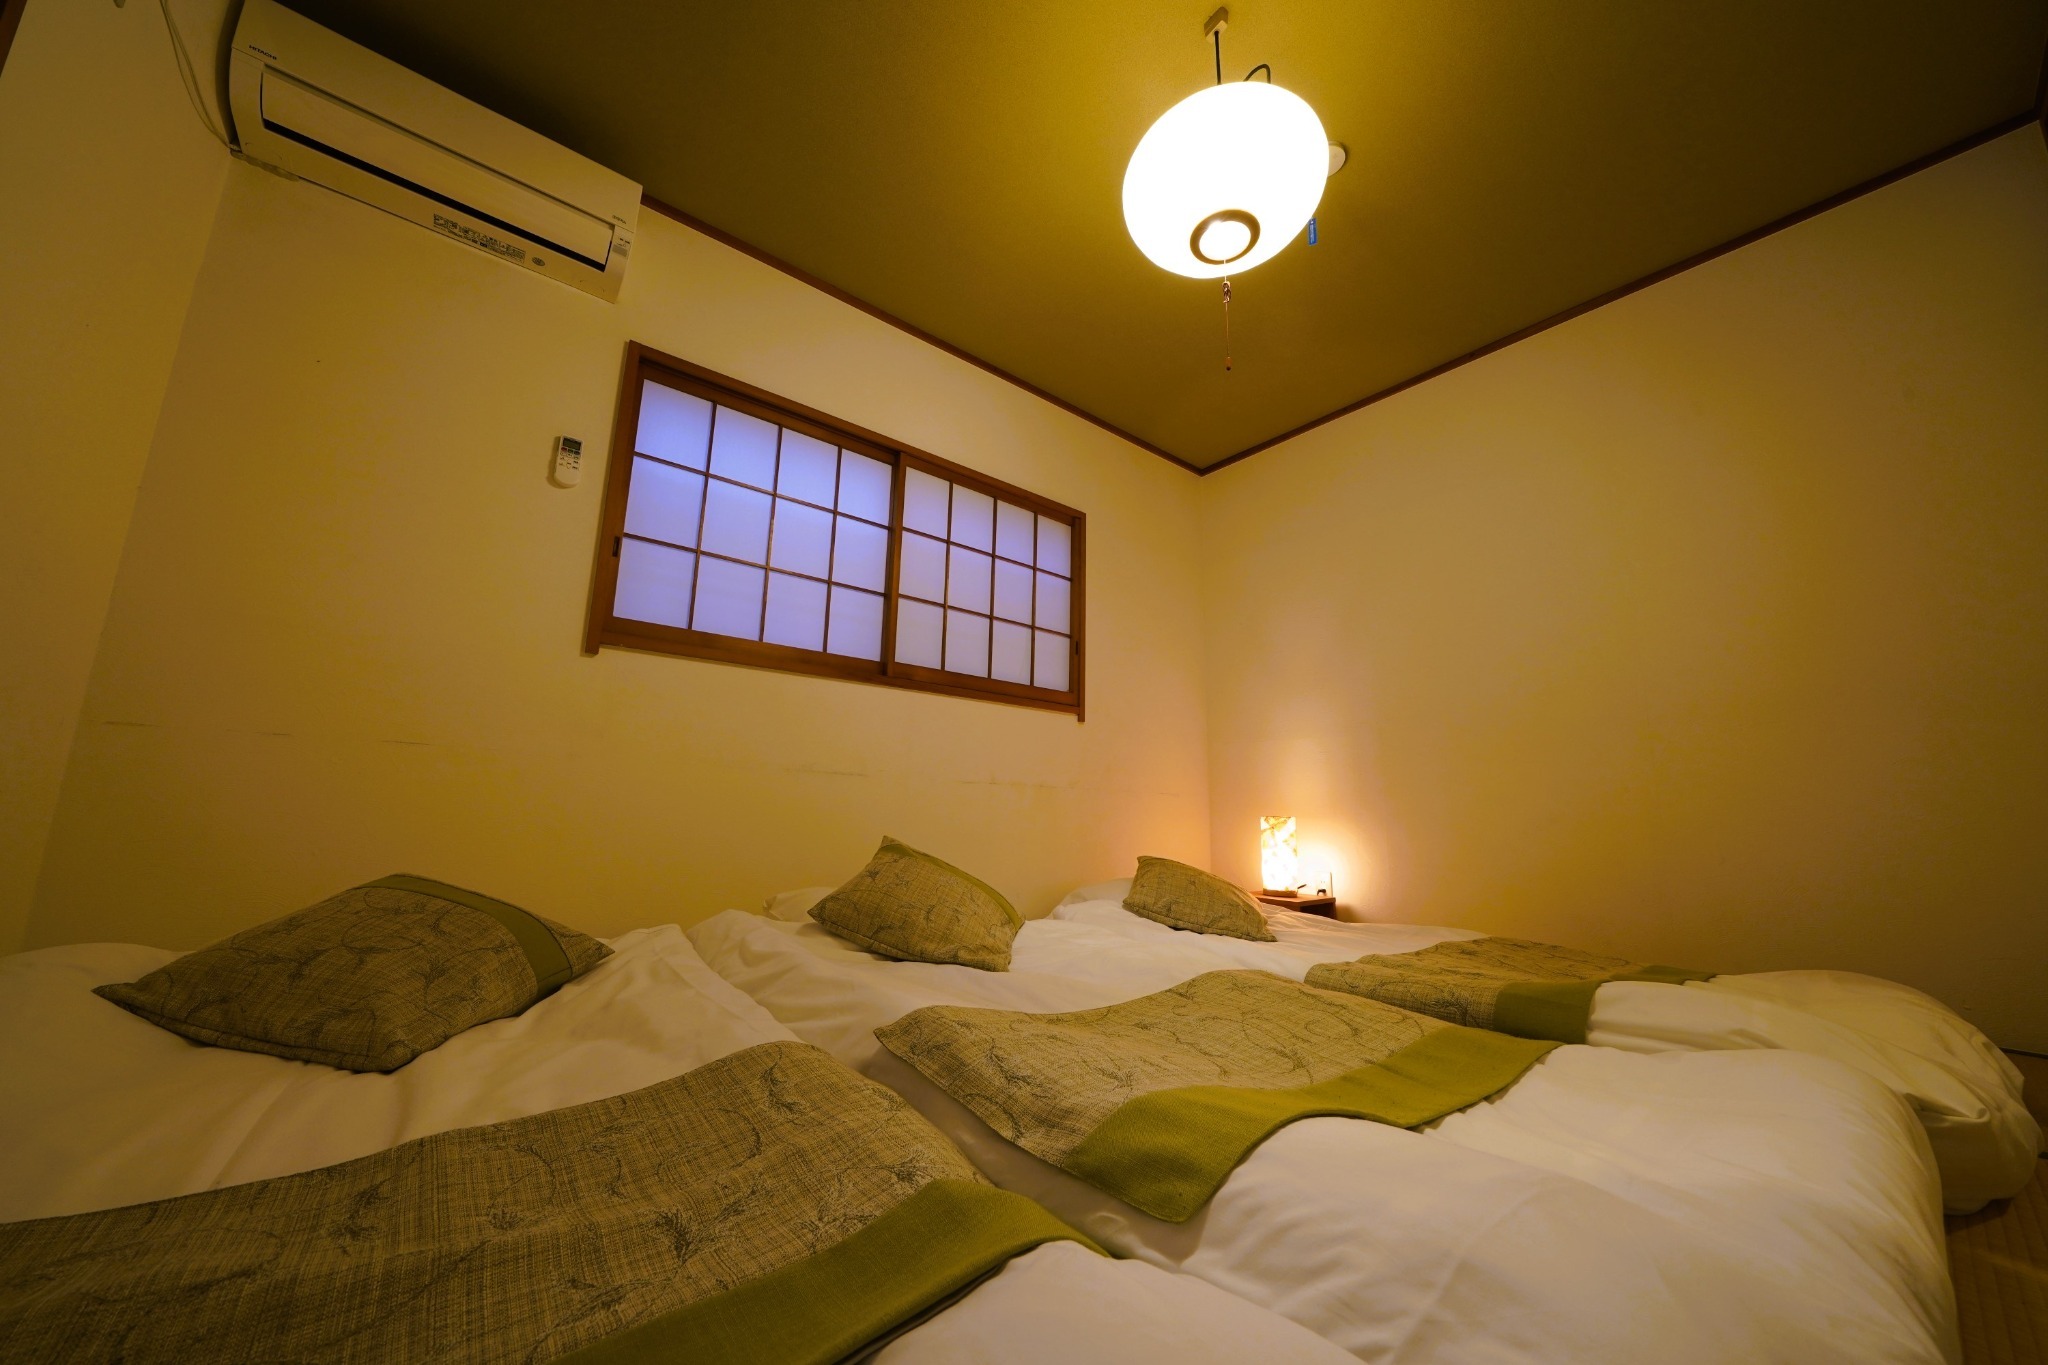 広さ75m2 定員6名 2ベッドルーム 一軒家貸切 無料駐車場あり 新宿近く中野坂上から5分